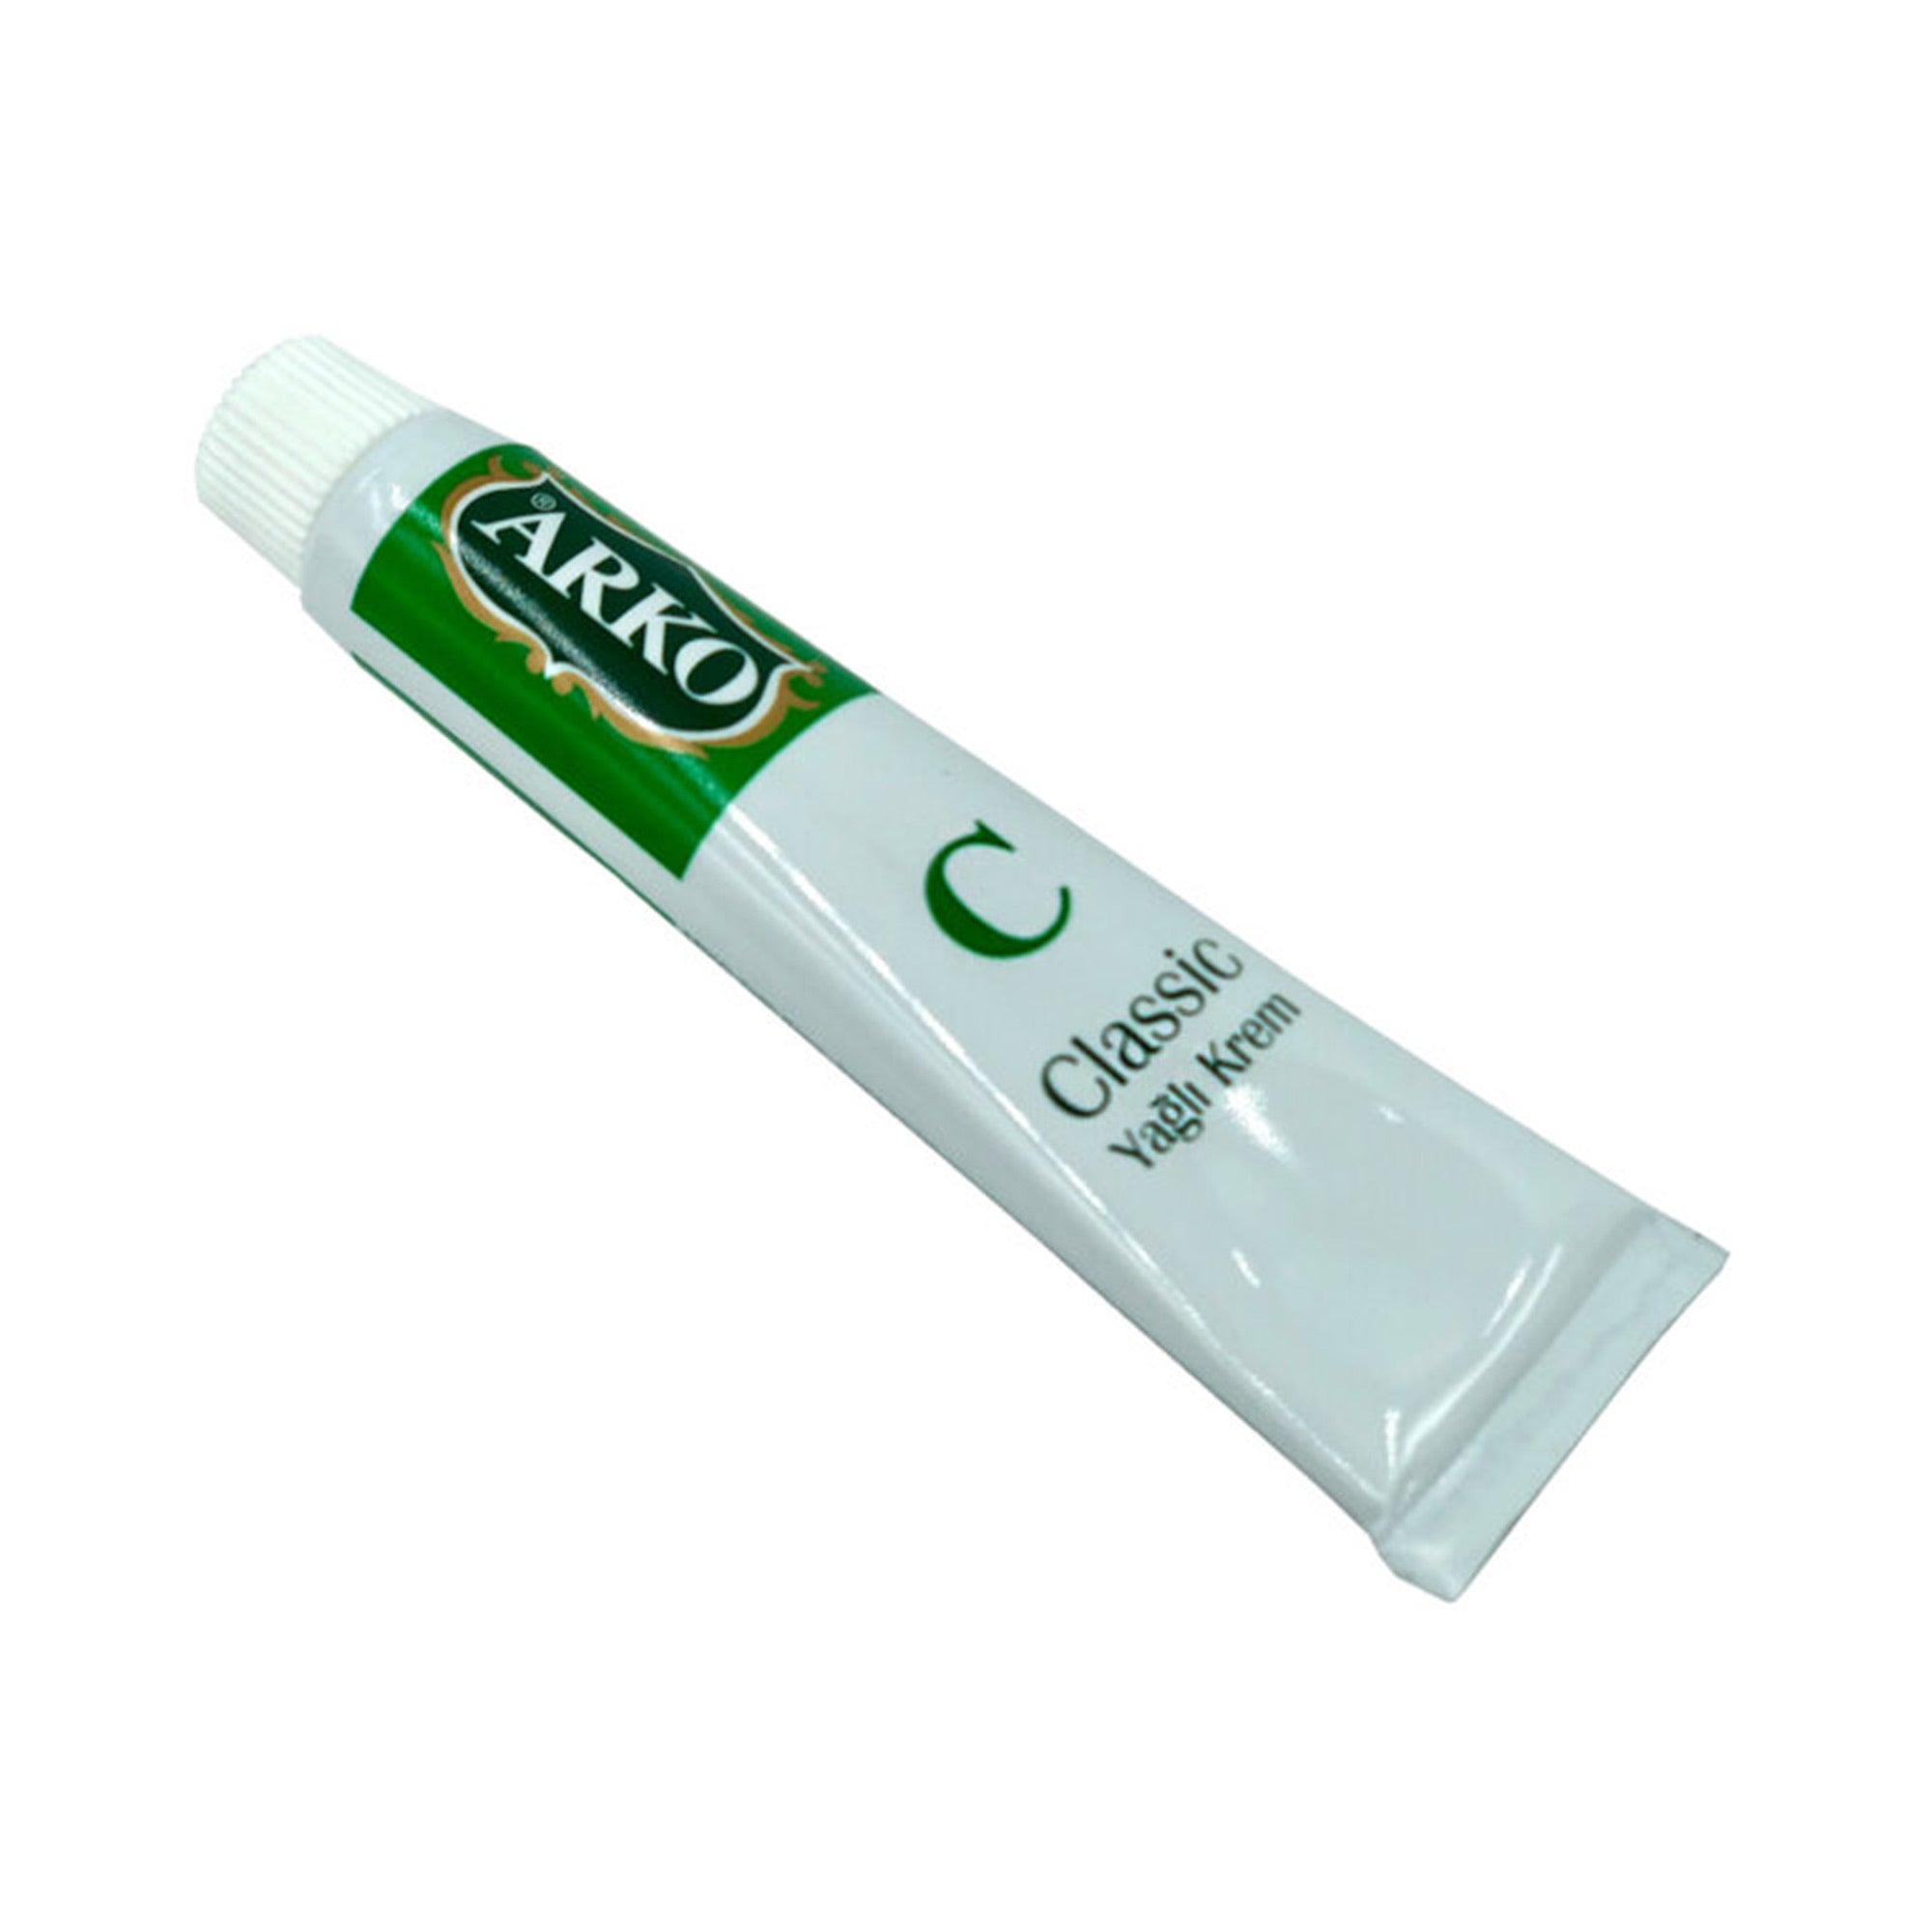 Arko - Classic Oily Cream 20ml